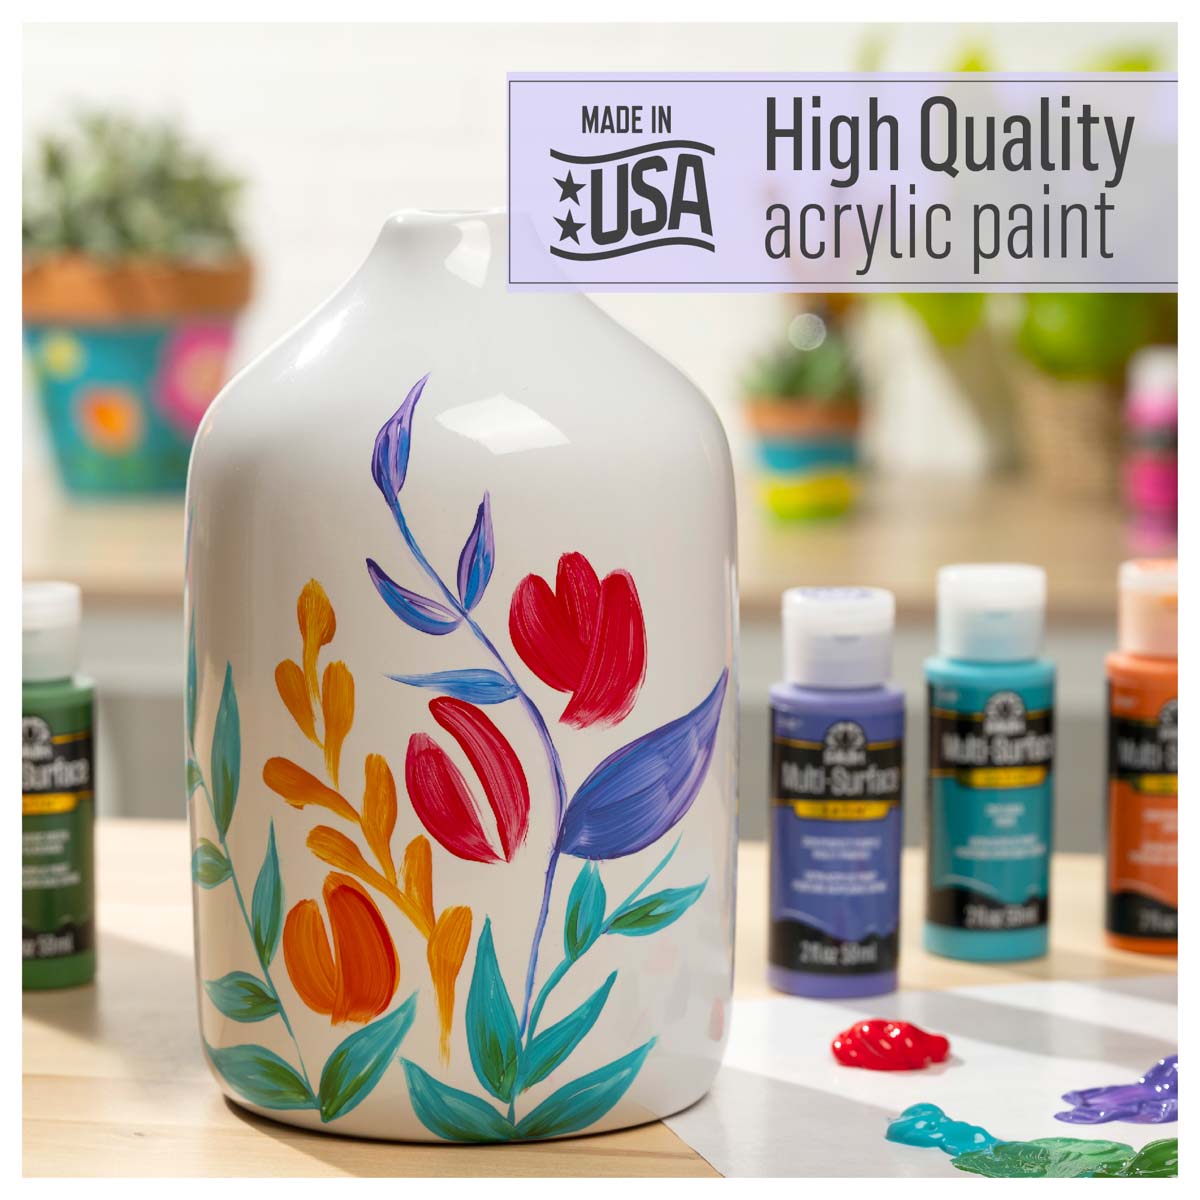 FolkArt ® Multi-Surface Satin Acrylic Paint 12 Color Set - Kit 1 - PROMO830